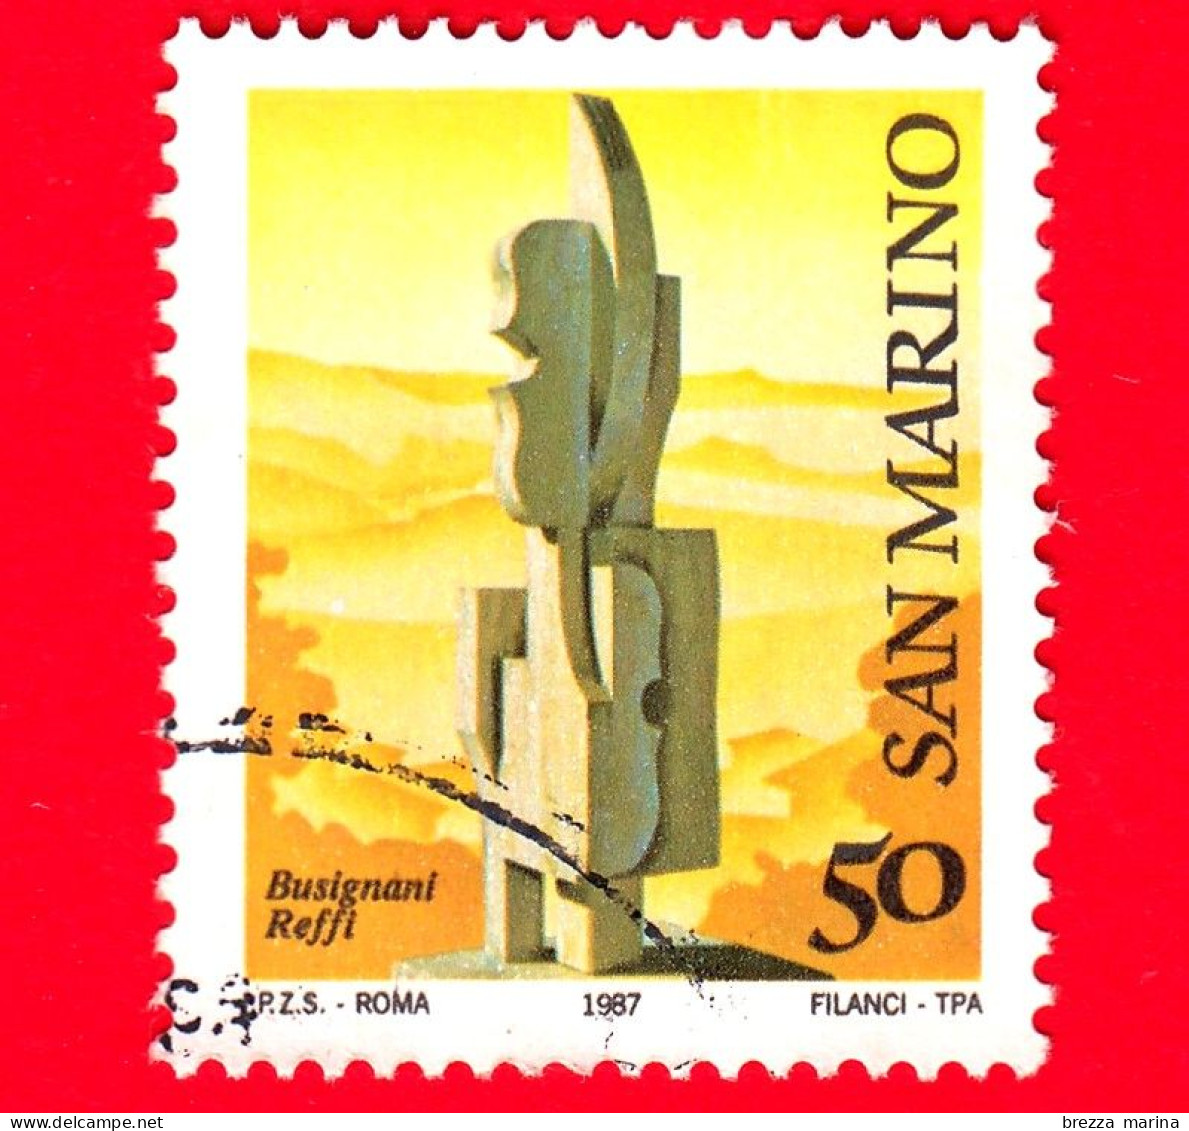 SAN MARINO - Usato - 1987 - Museo All'aperto - Scultura Di Busignani Reffi - 50 - Used Stamps